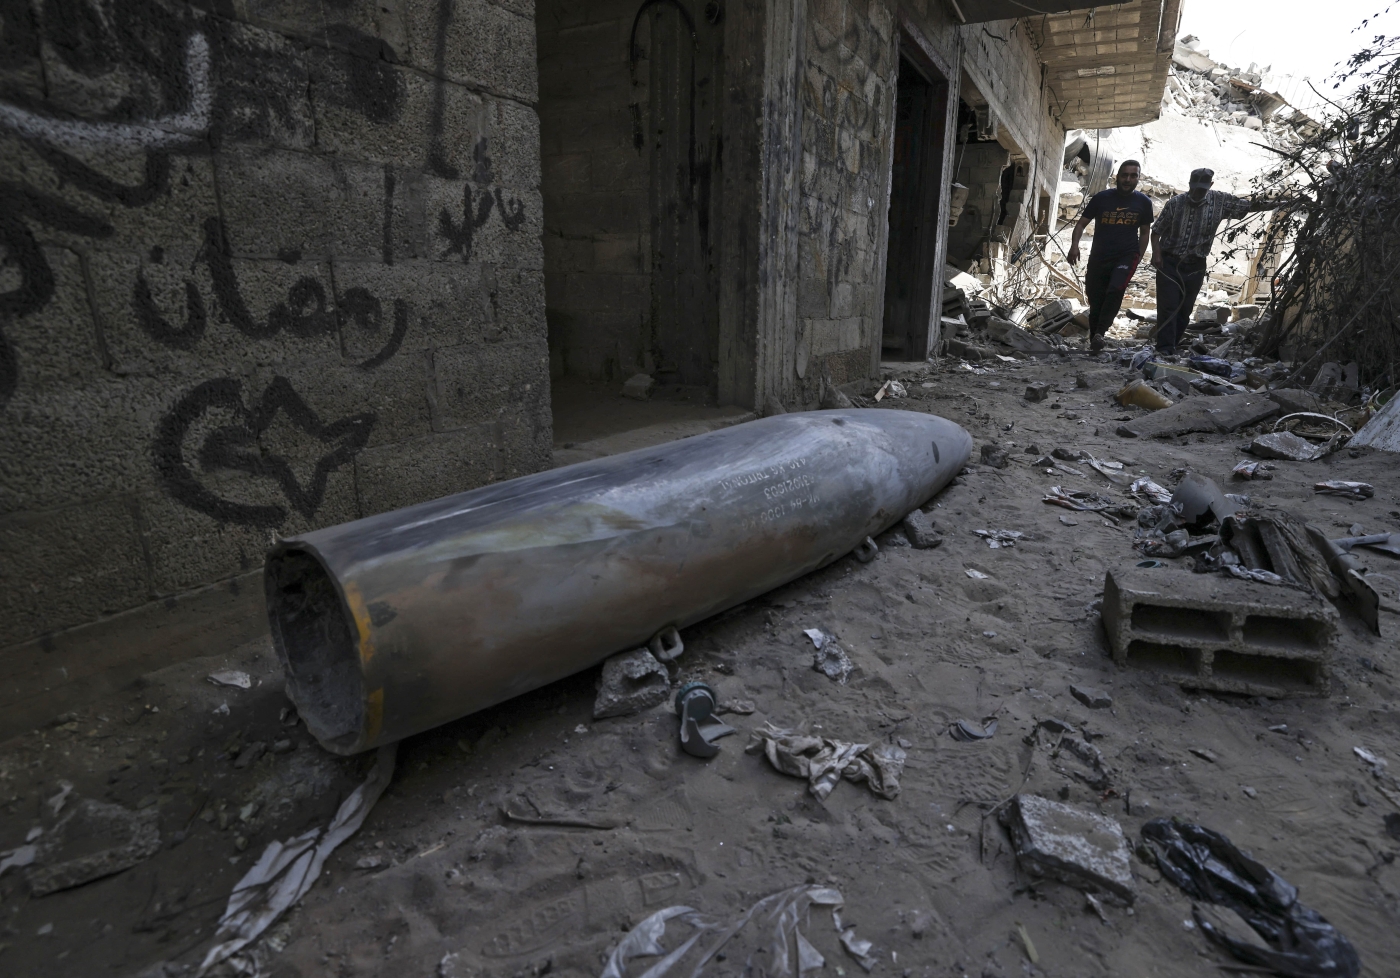 Une partie d’une bombe MK-84 larguée par un avion de combat israélien F-16 gît parmi les décombres dans le quartier al-Rimal de Gaza, le 18 mai 2021 (AFP)